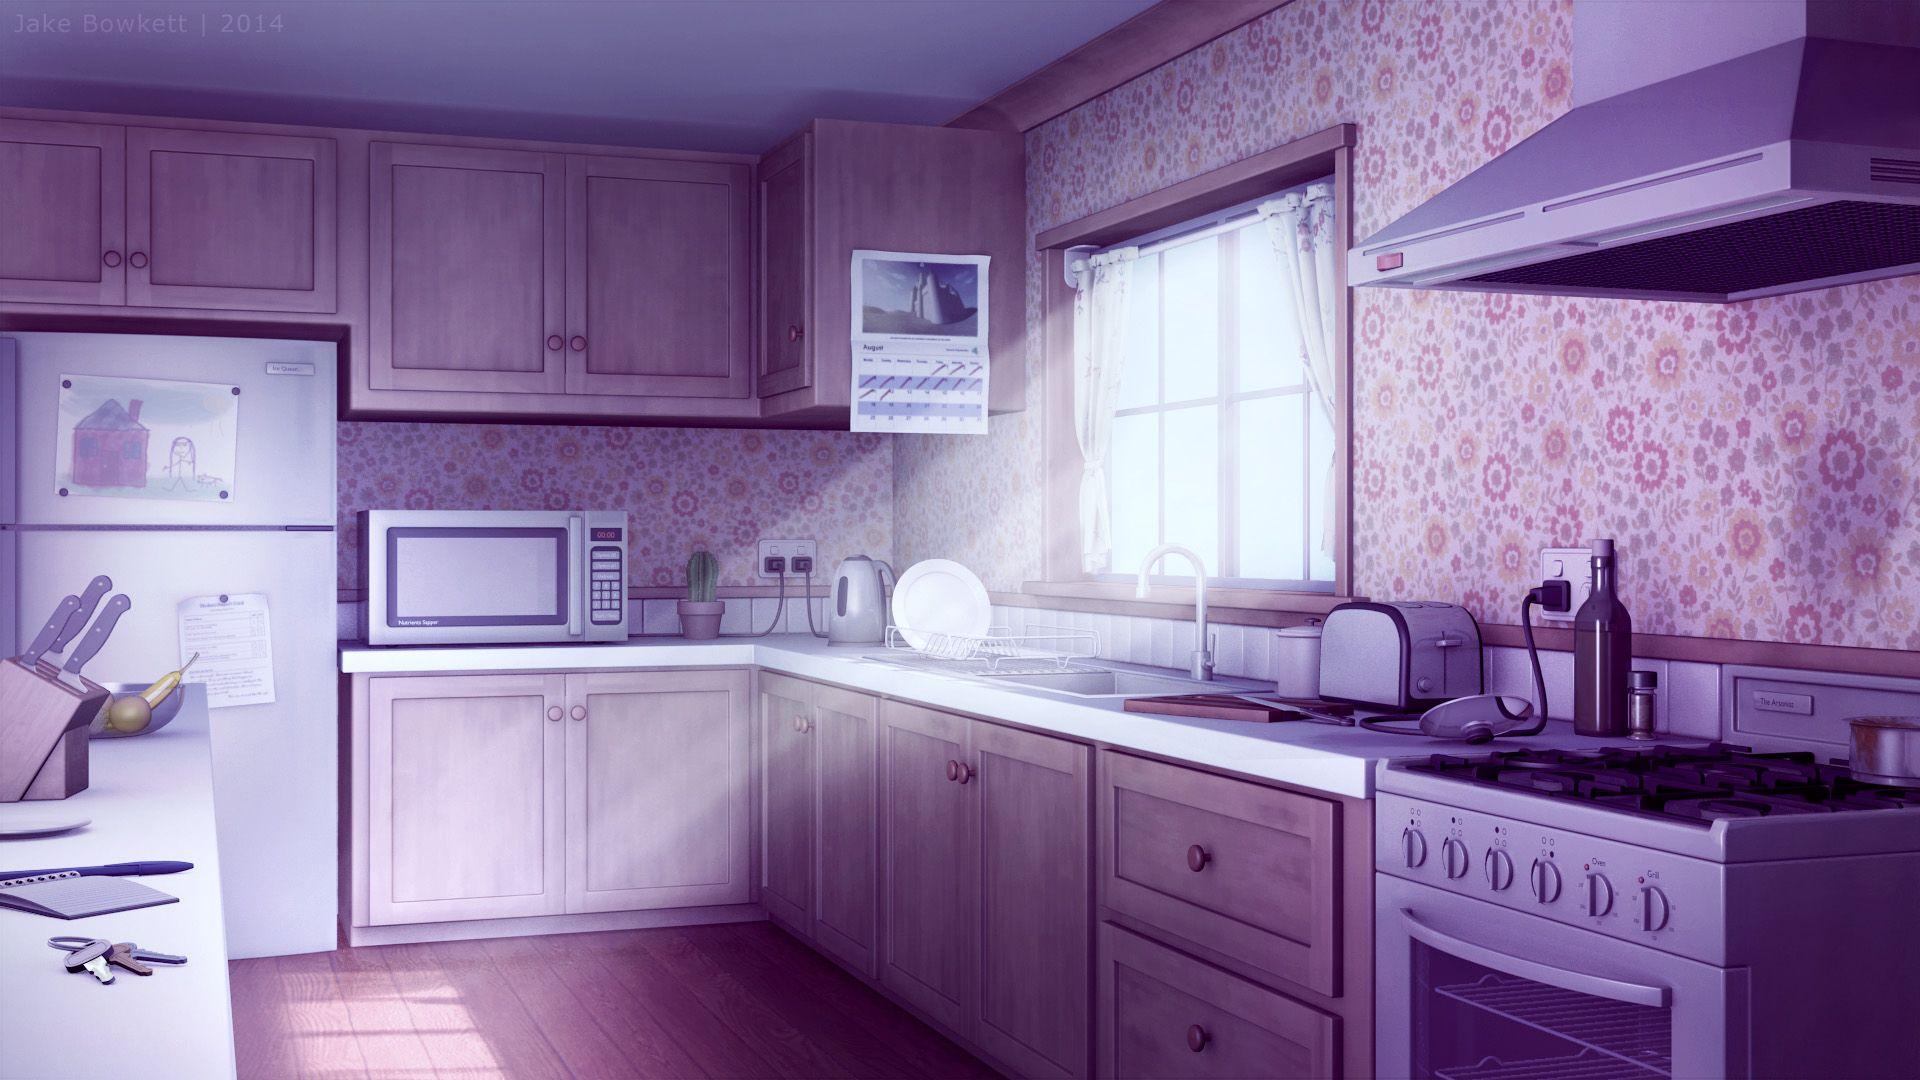 Với bối cảnh phòng bếp nổi tiếng trong anime, bạn sẽ có thể thỏa sức khám phá không gian tuyệt đẹp tràn đầy sáng tạo và ấn tượng. Hãy cùng đắm chìm trong không gian phòng bếp bất tận trong một số anime được yêu thích nhất!